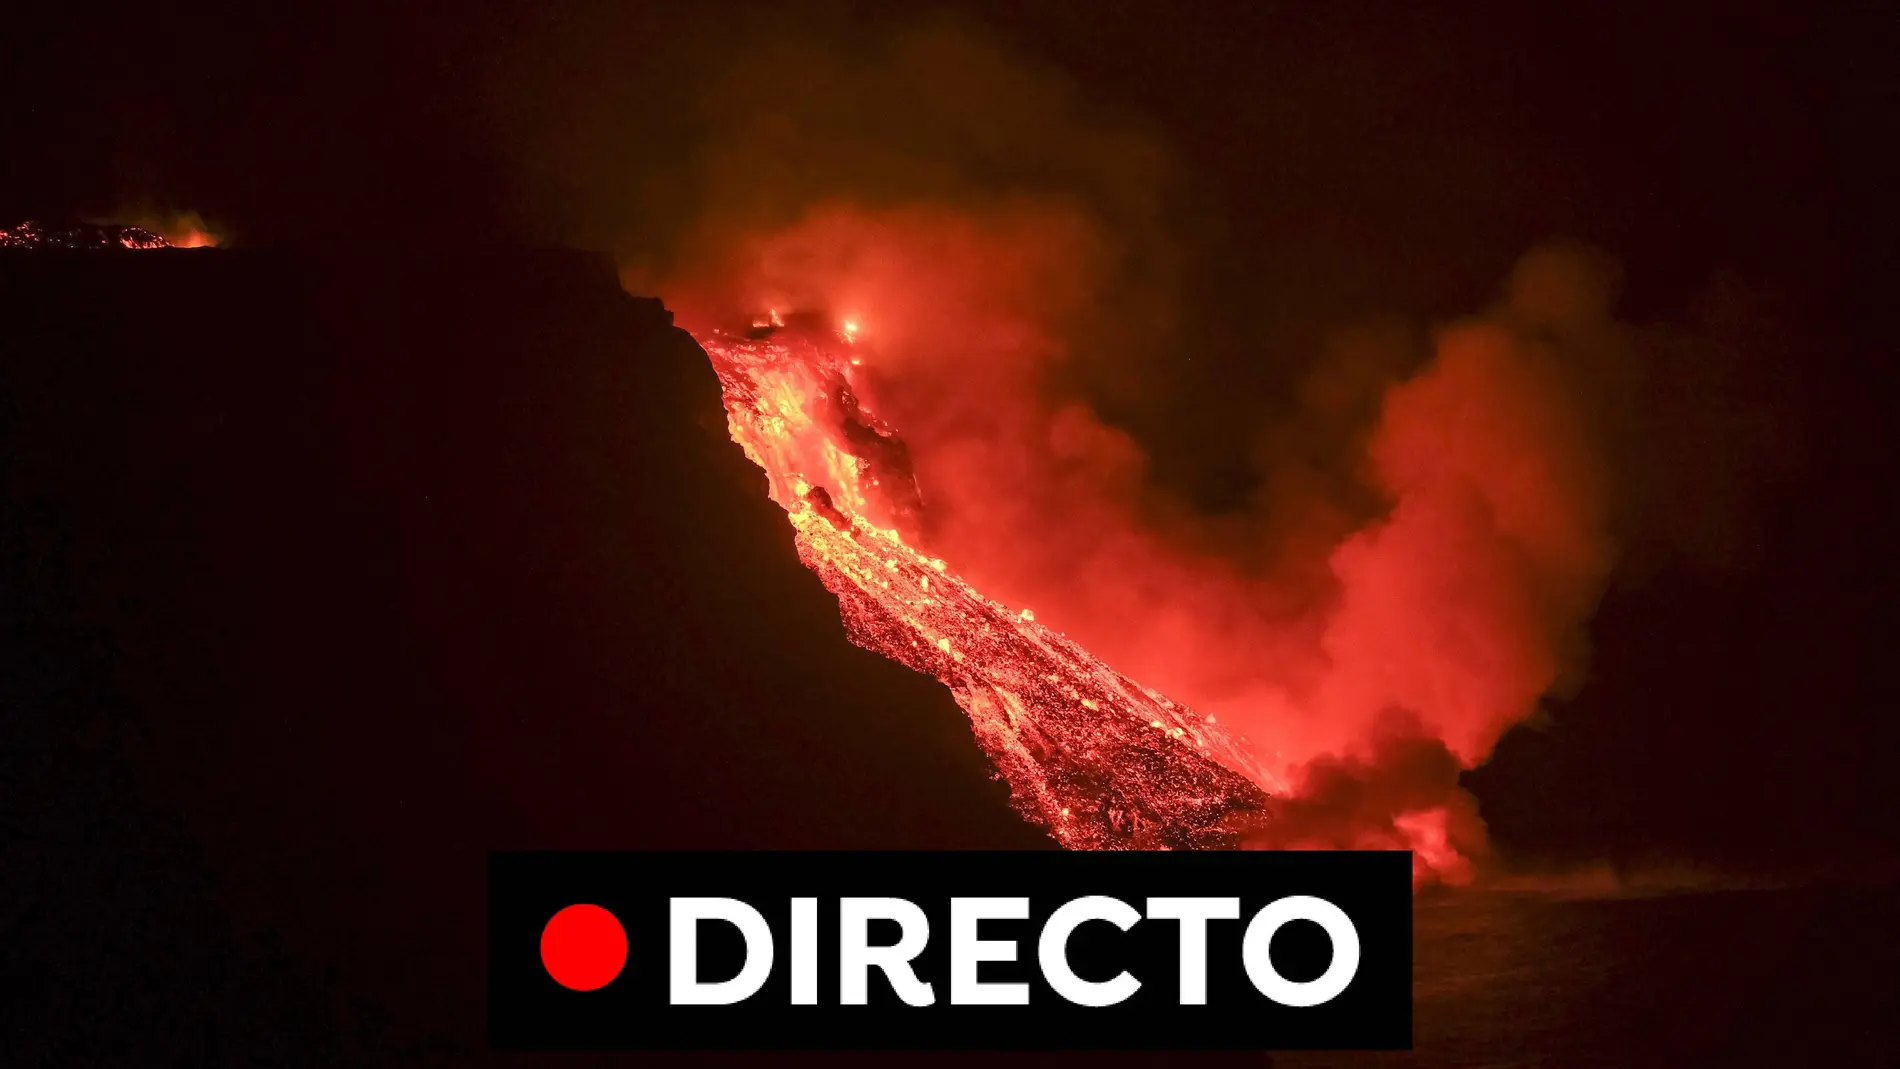 Última hora volcán La Palma: La lava llega al mar dejando una impresionante nube de 50 metros